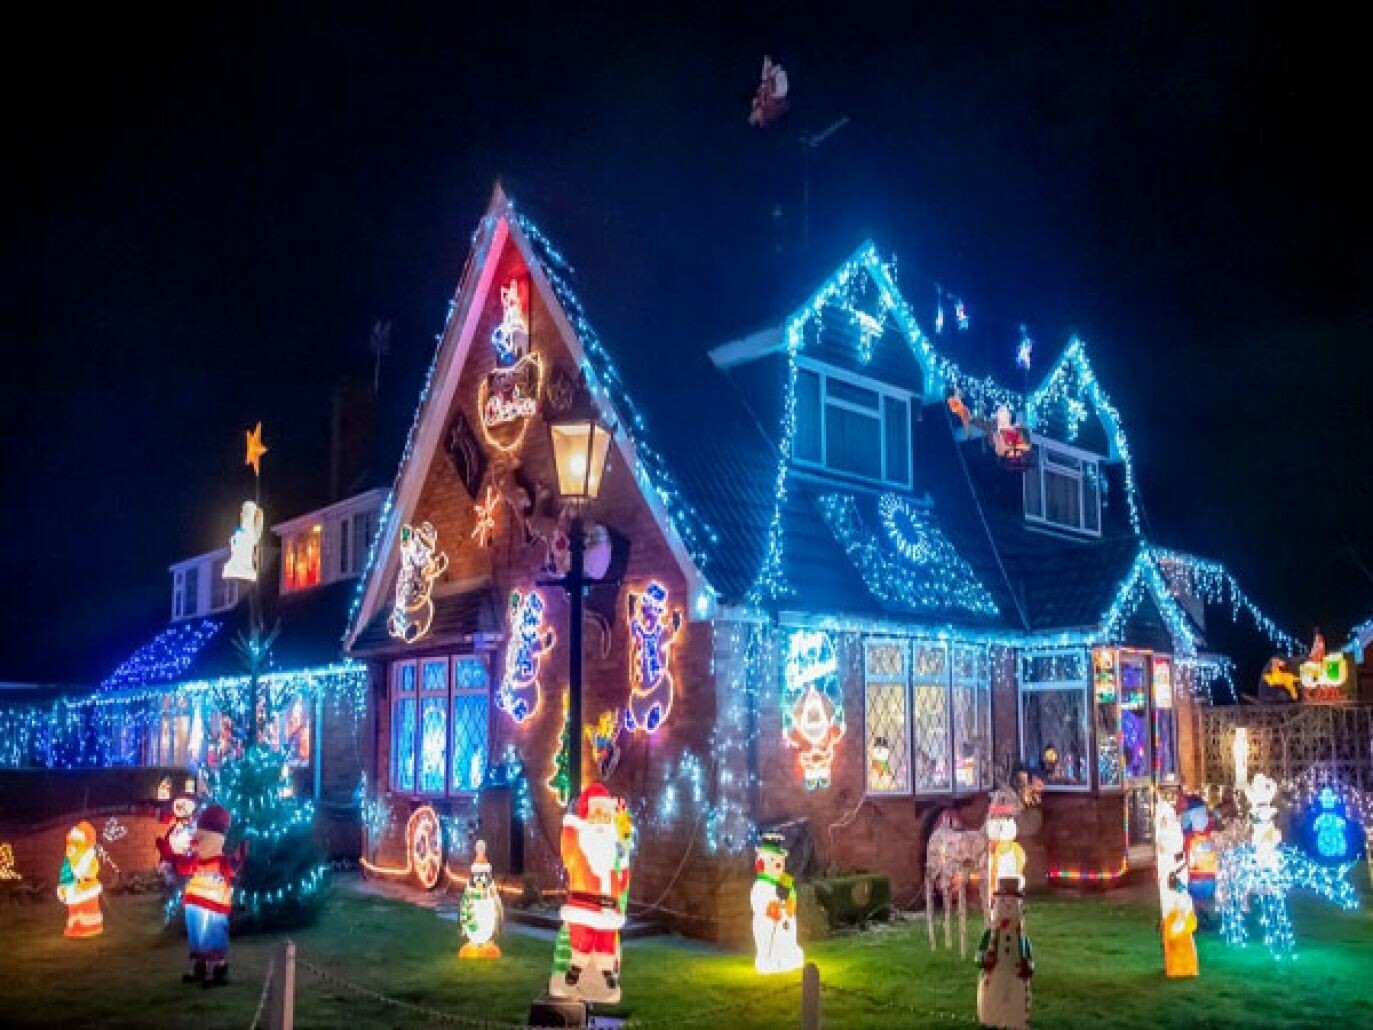 زخارف مُبهرة لتزيين منزلك خلال ليلة الكريسماس في بريطانيا 